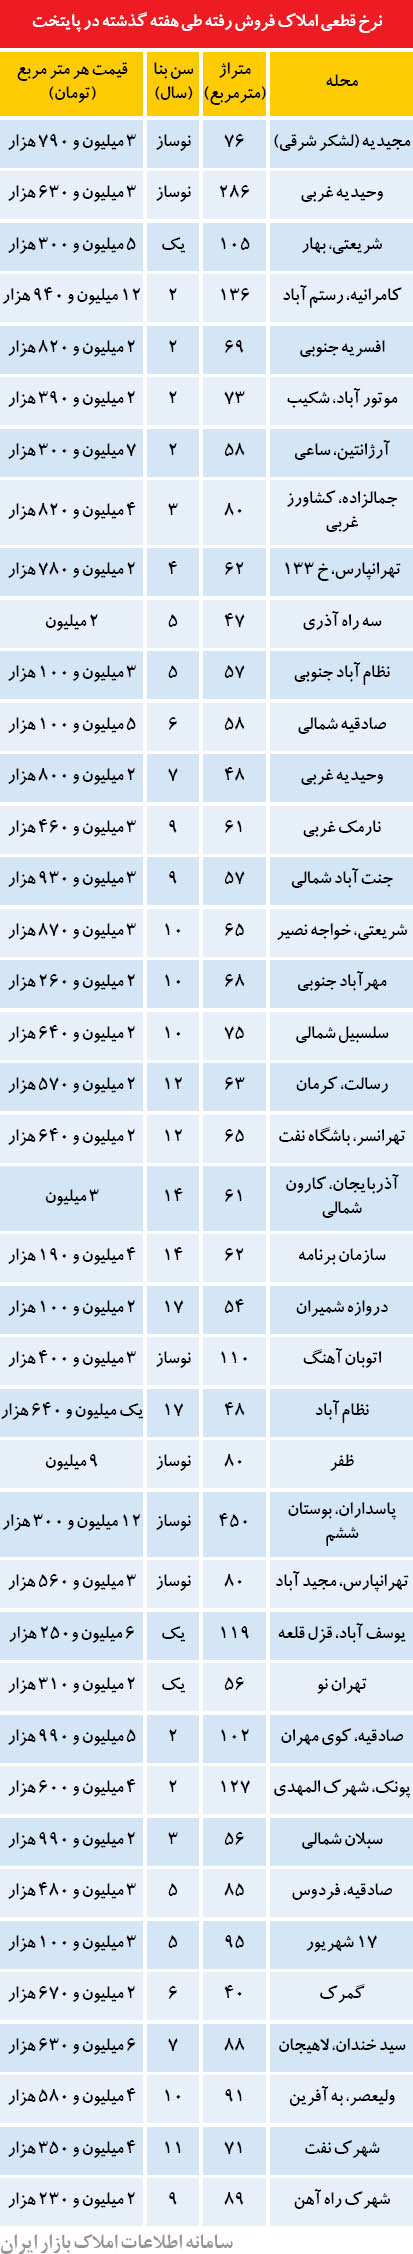 قیمت آپارتمان در برخی نقاط تهران (جدول)